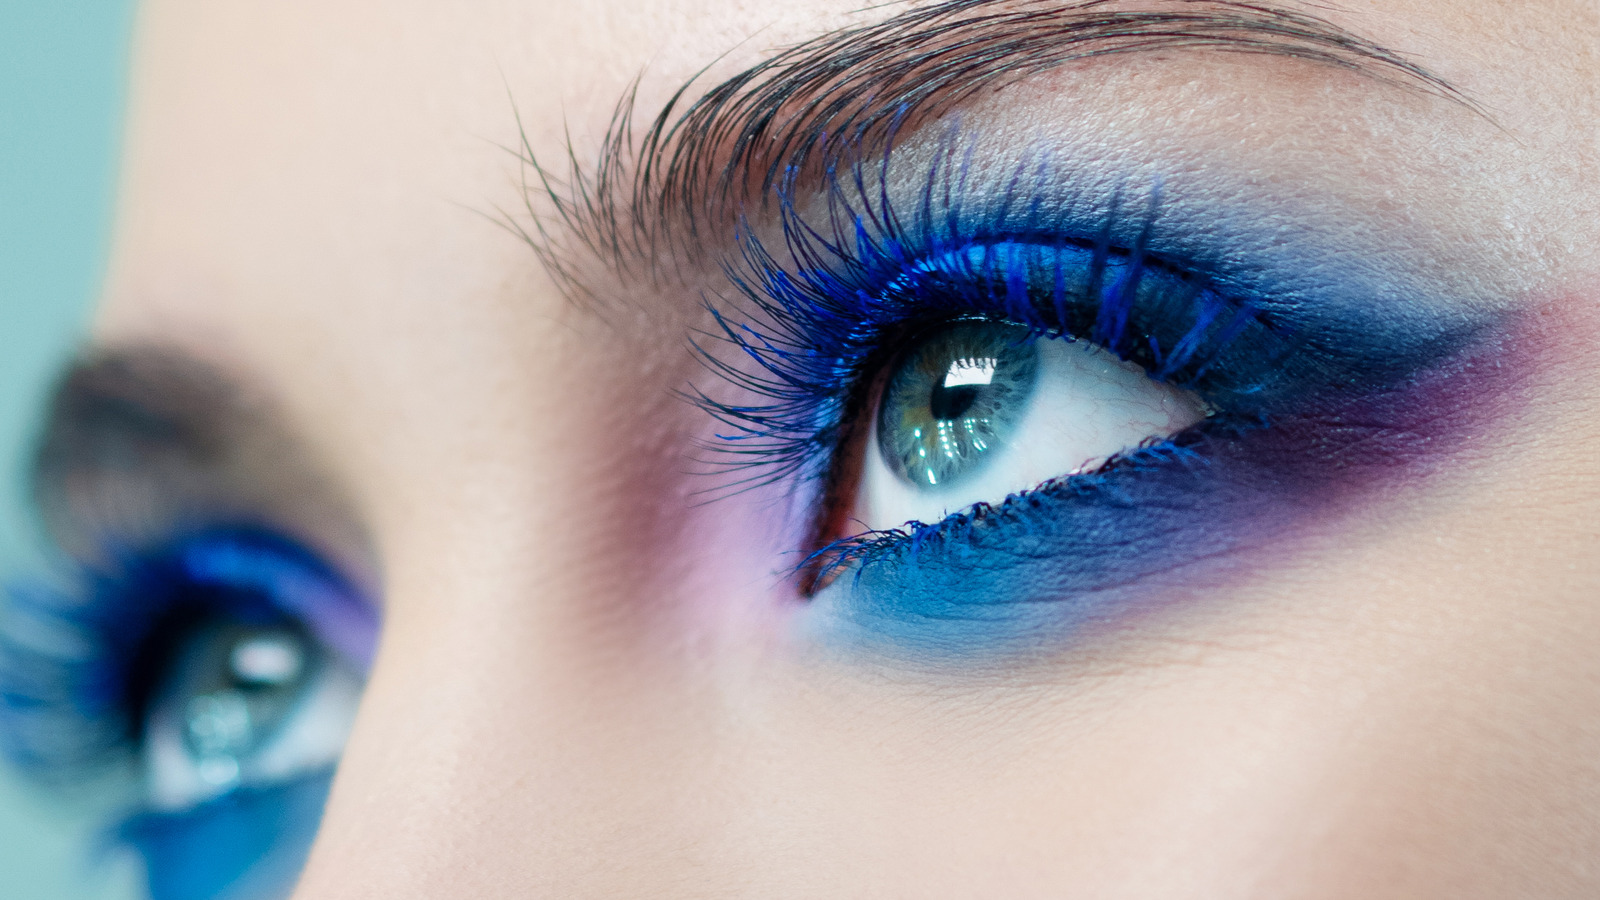 How to Create Color-blocked Eyeshadow Makeup Look